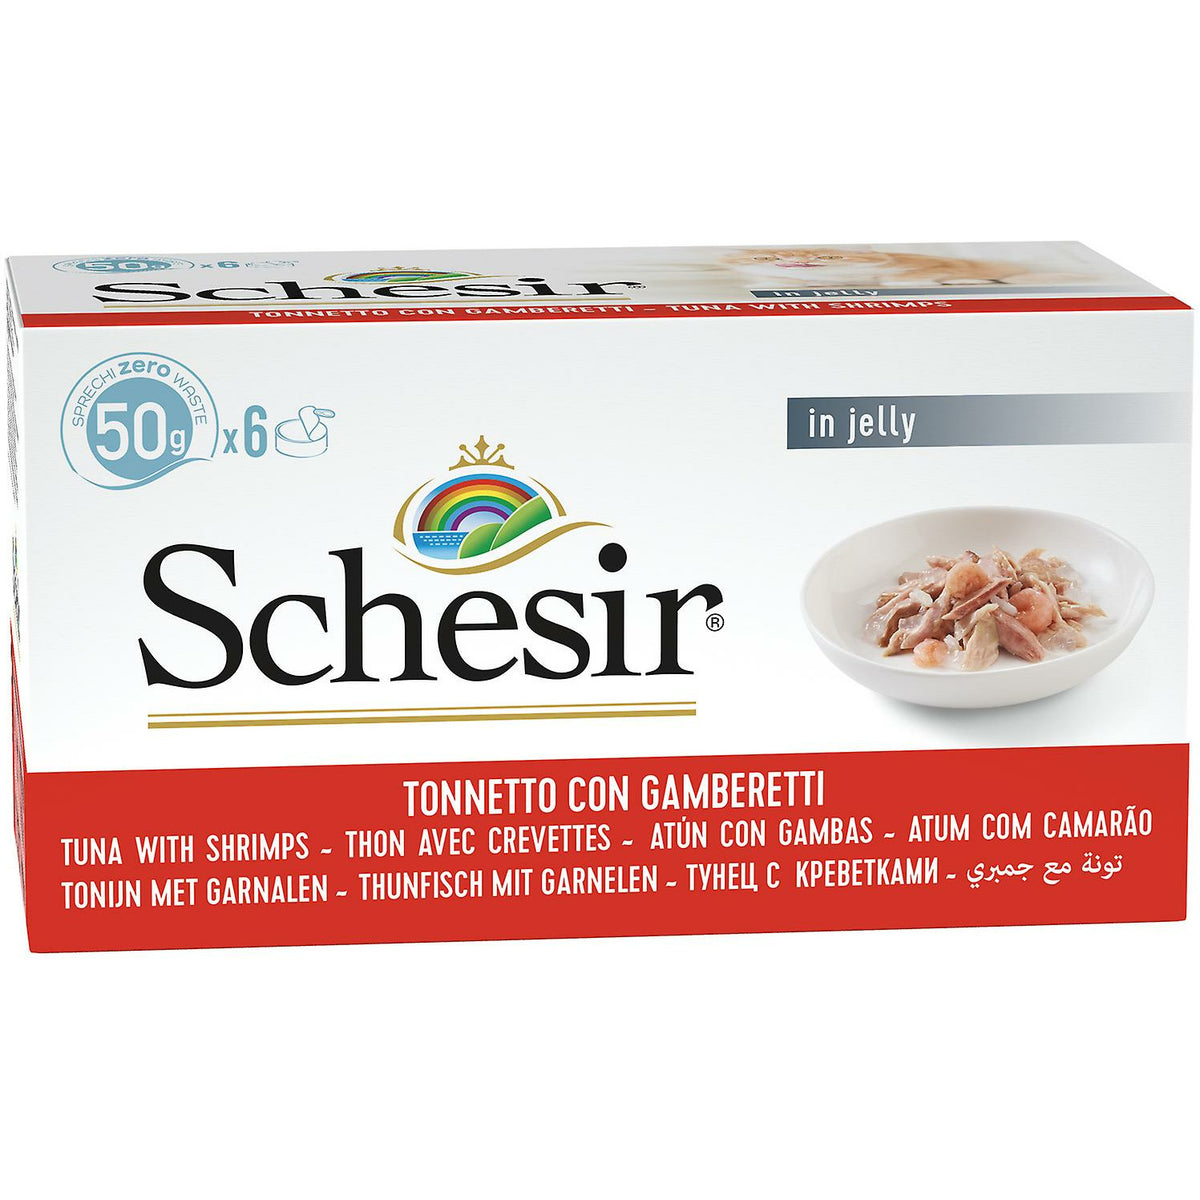 Schesir Thon avec crevettes - Paquet de 6 conserves de nourriture humide pour chats (6 x 50g)